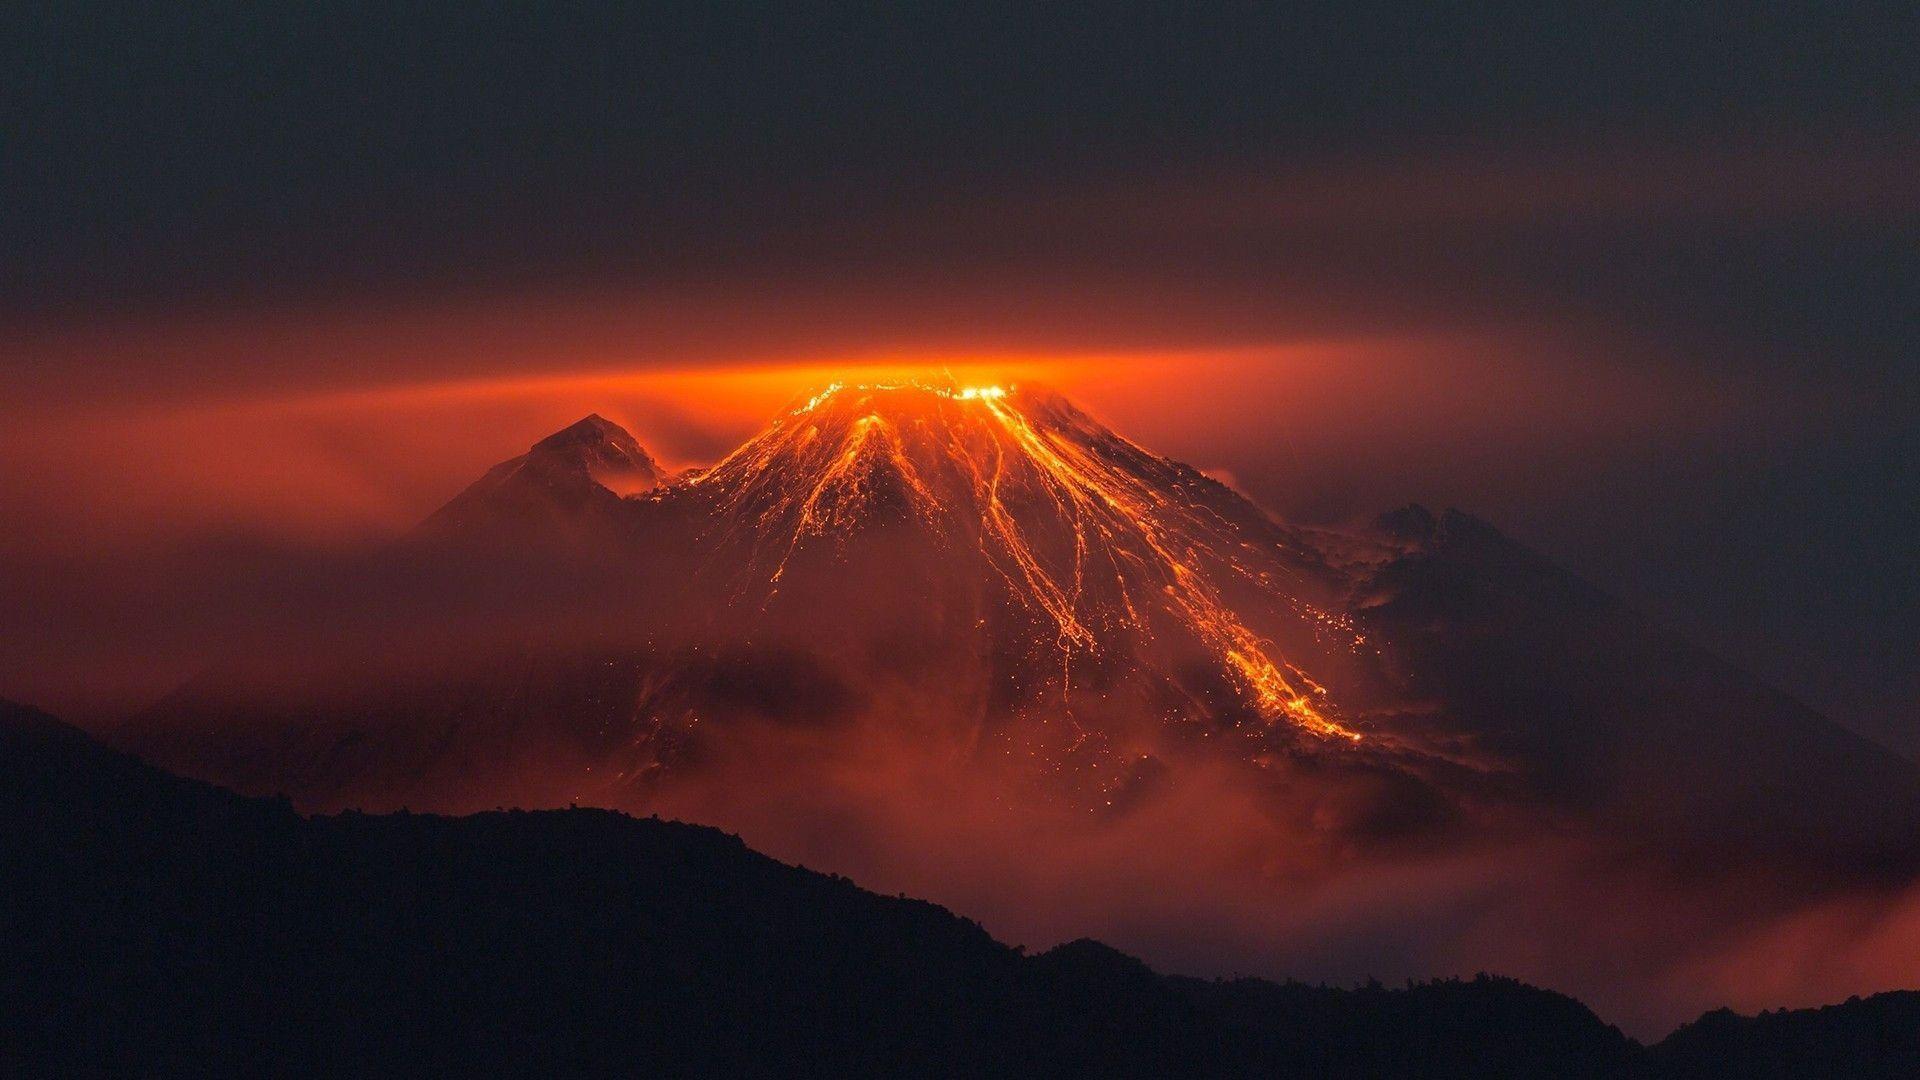 حیرت انگیزترین عکس از اطراف کوه آتشفشانی فعال واقعی